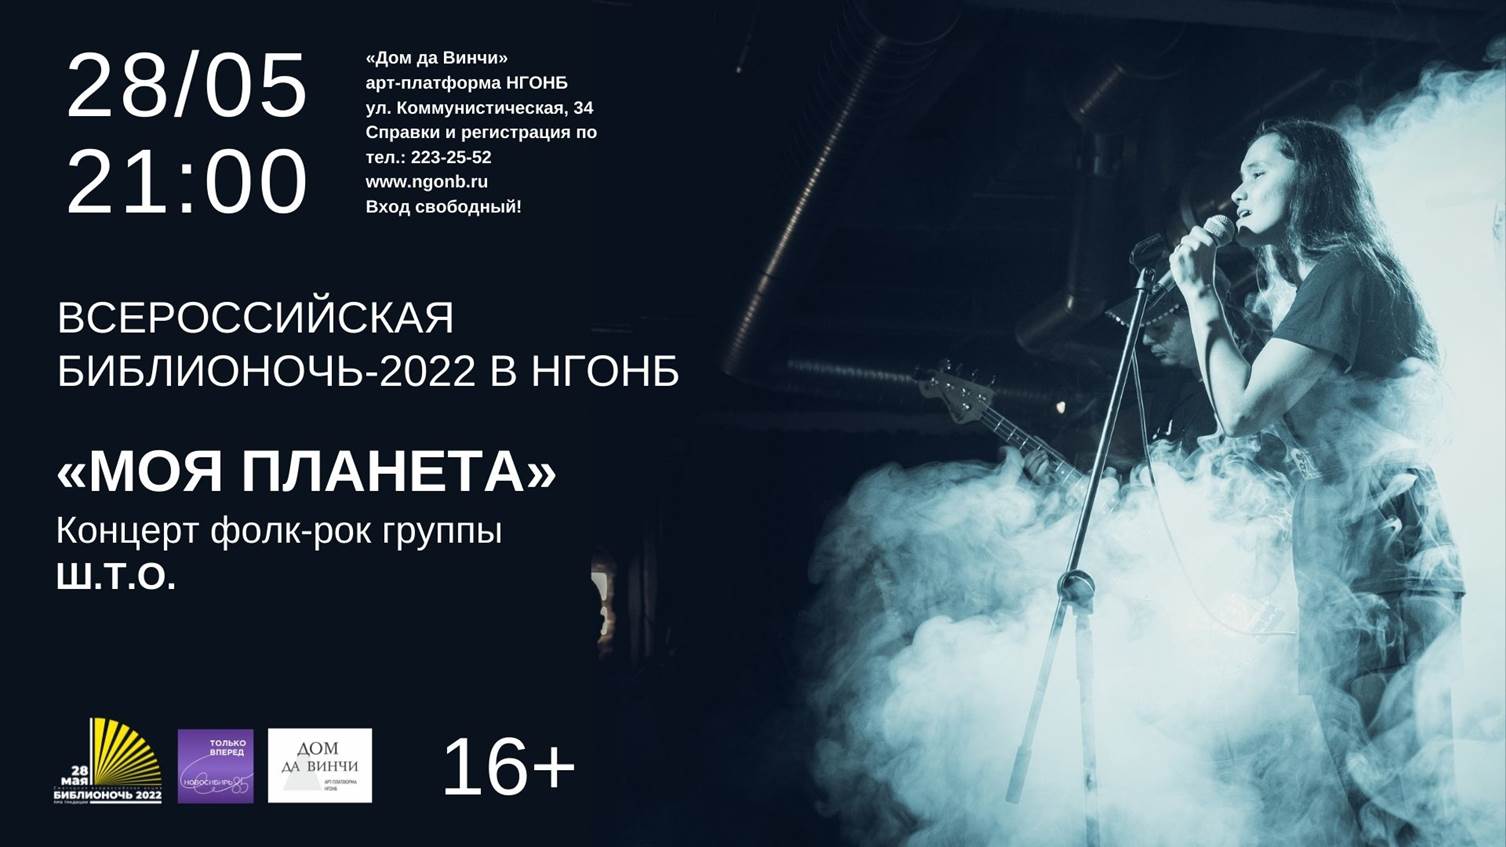 "МОЯ ПЛАНЕТА" - концерт фолк-рок группы Ш.Т.О.